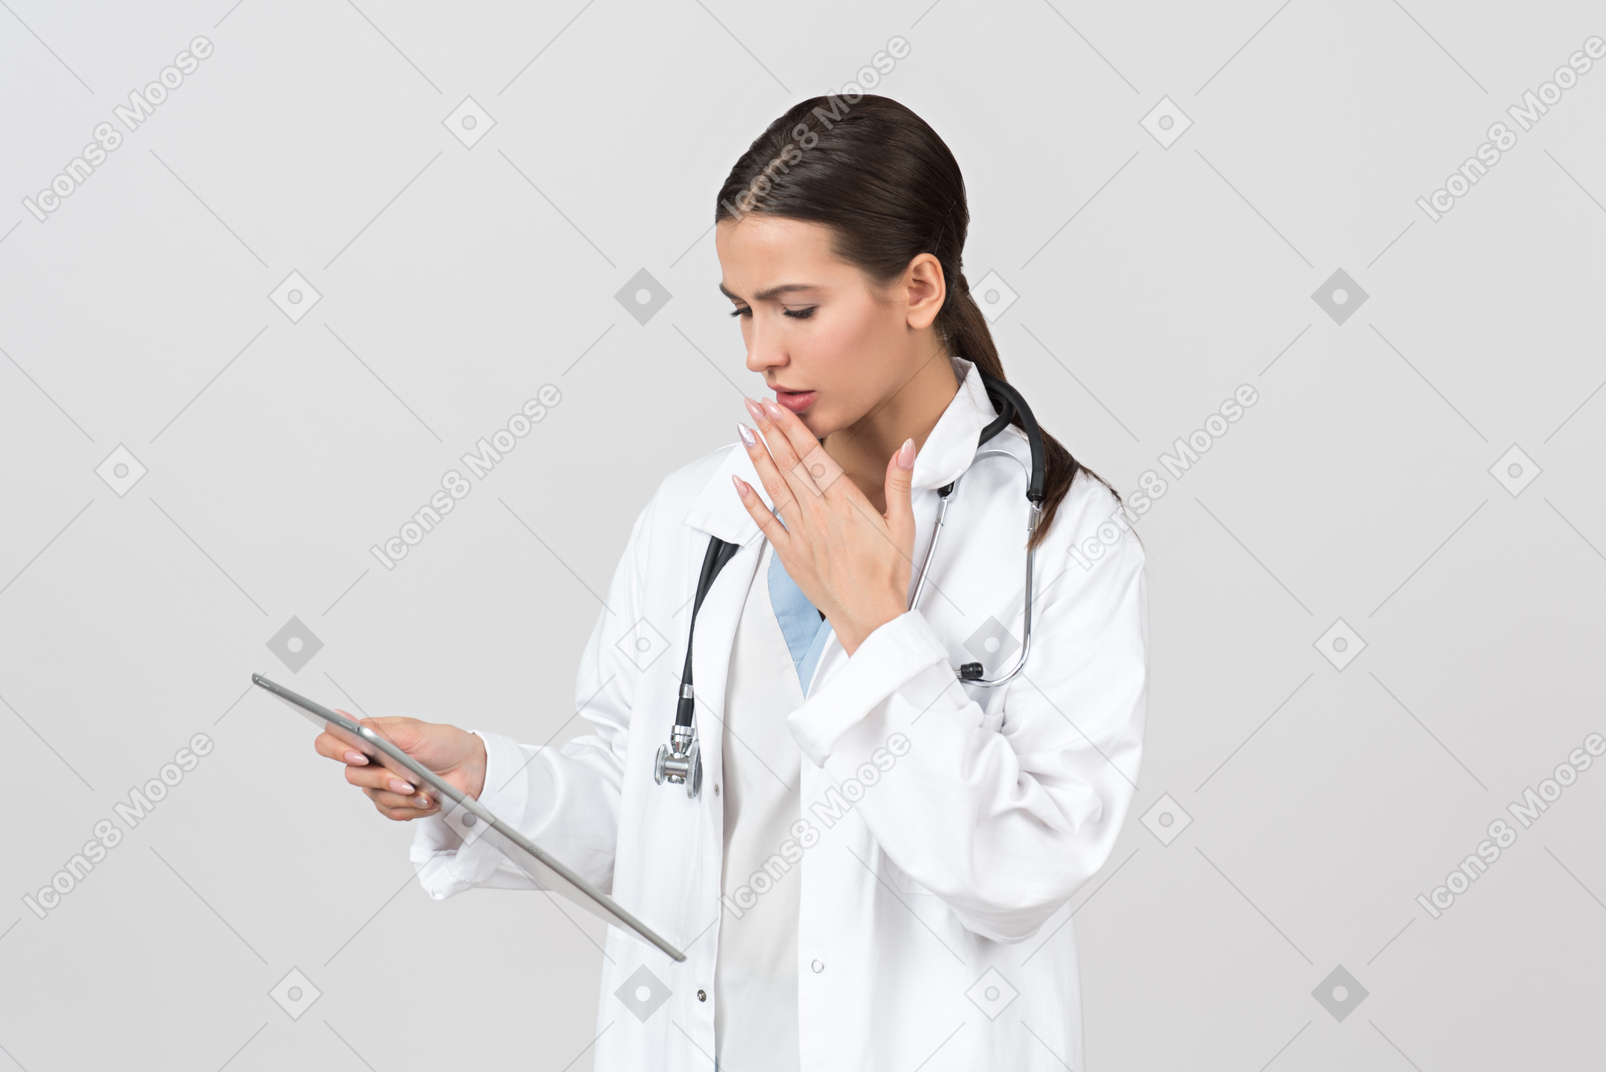 看起来年轻女性的医生担心在数字式片剂的信息